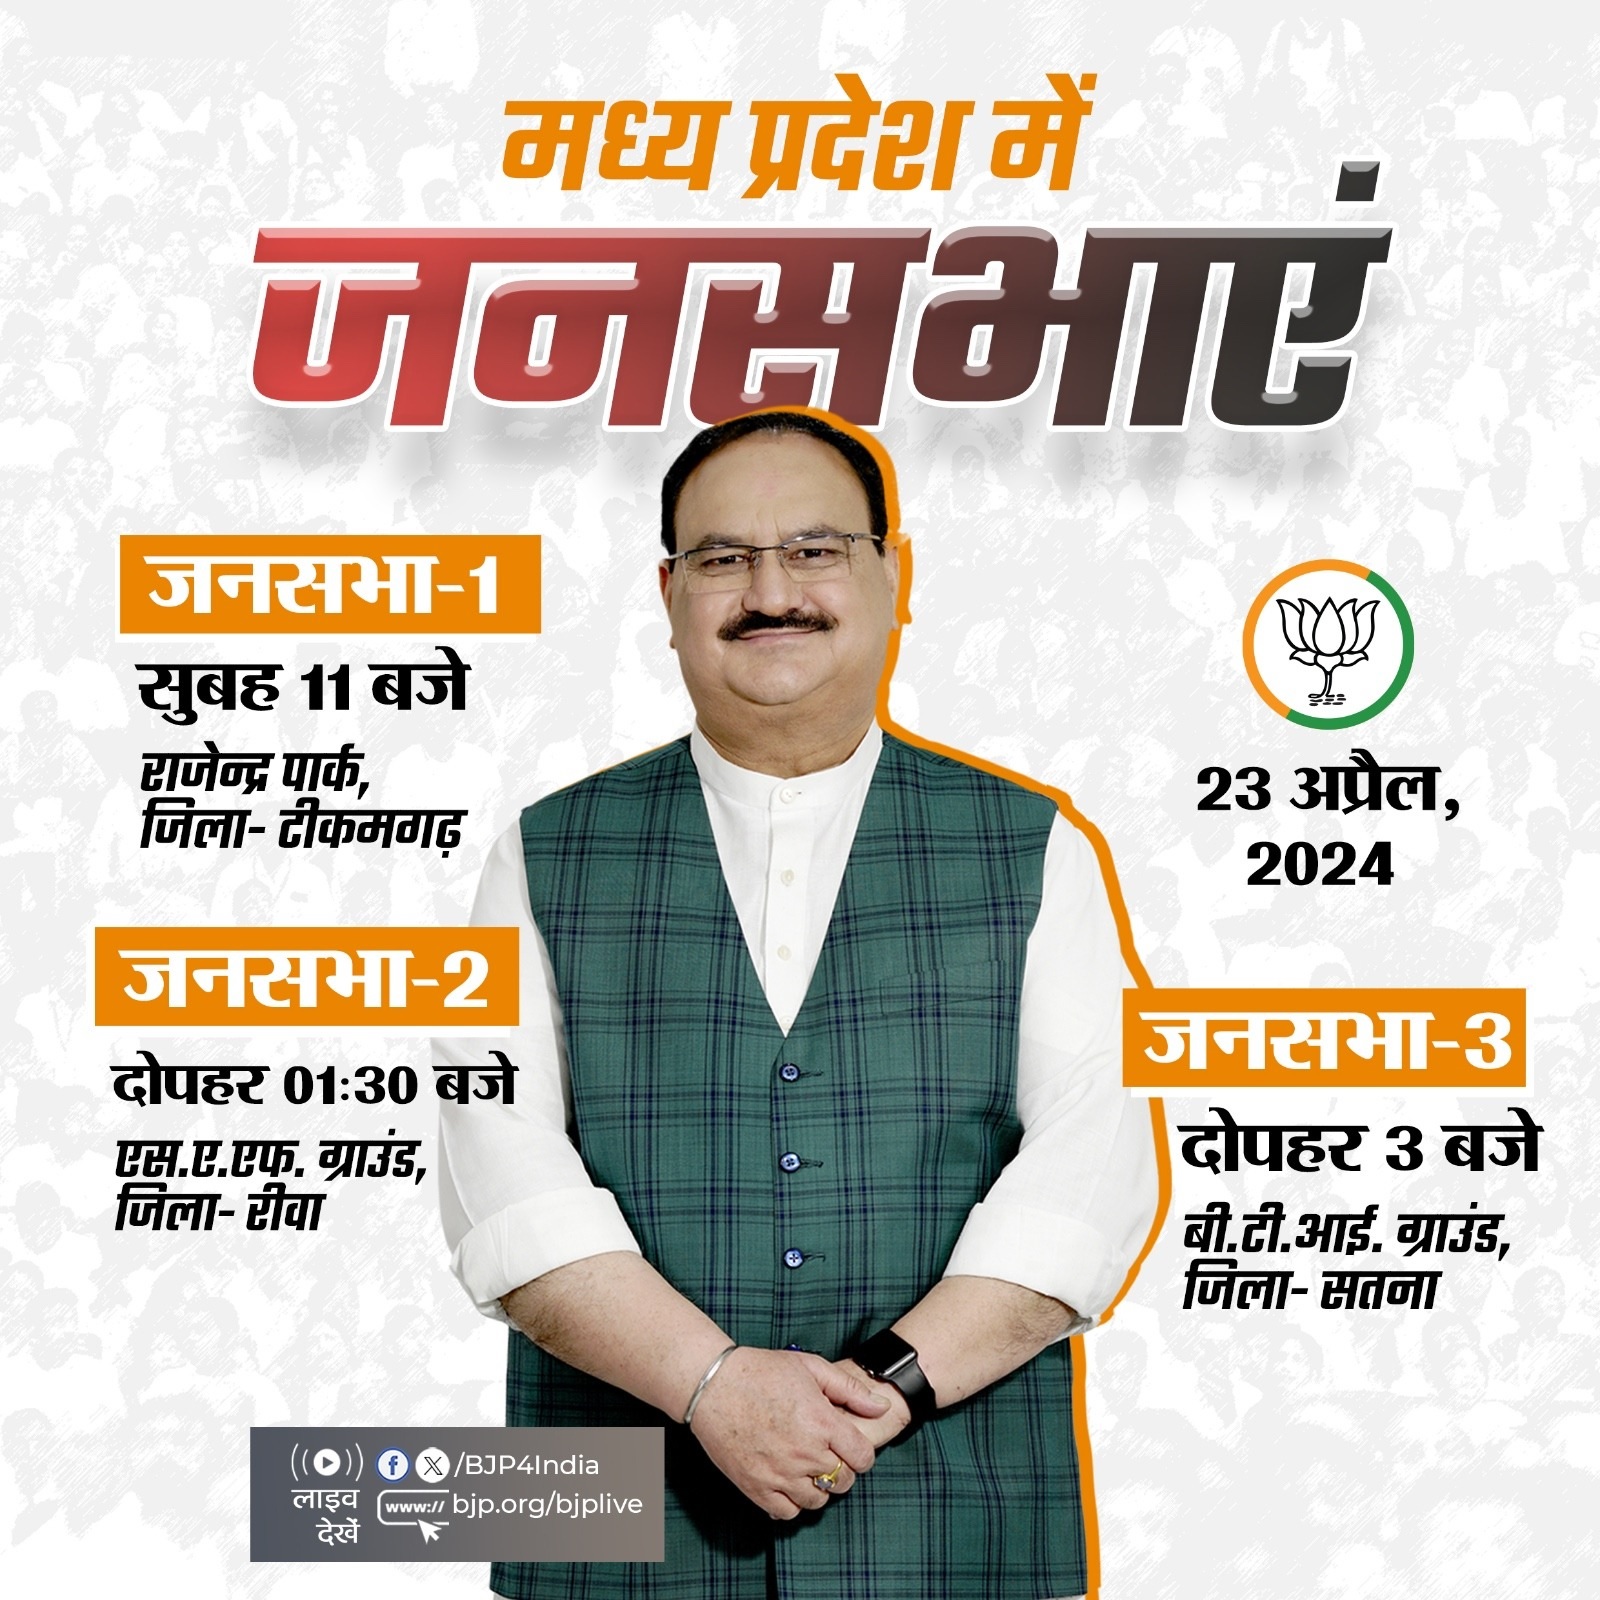 भारतीय जनता पार्टी ने अपने राष्ट्रीय अध्यक्ष जेपी नड्डा के आज के चुनावी दौरे का कार्यक्रम एक्स हैंडल पर साझा किया है।